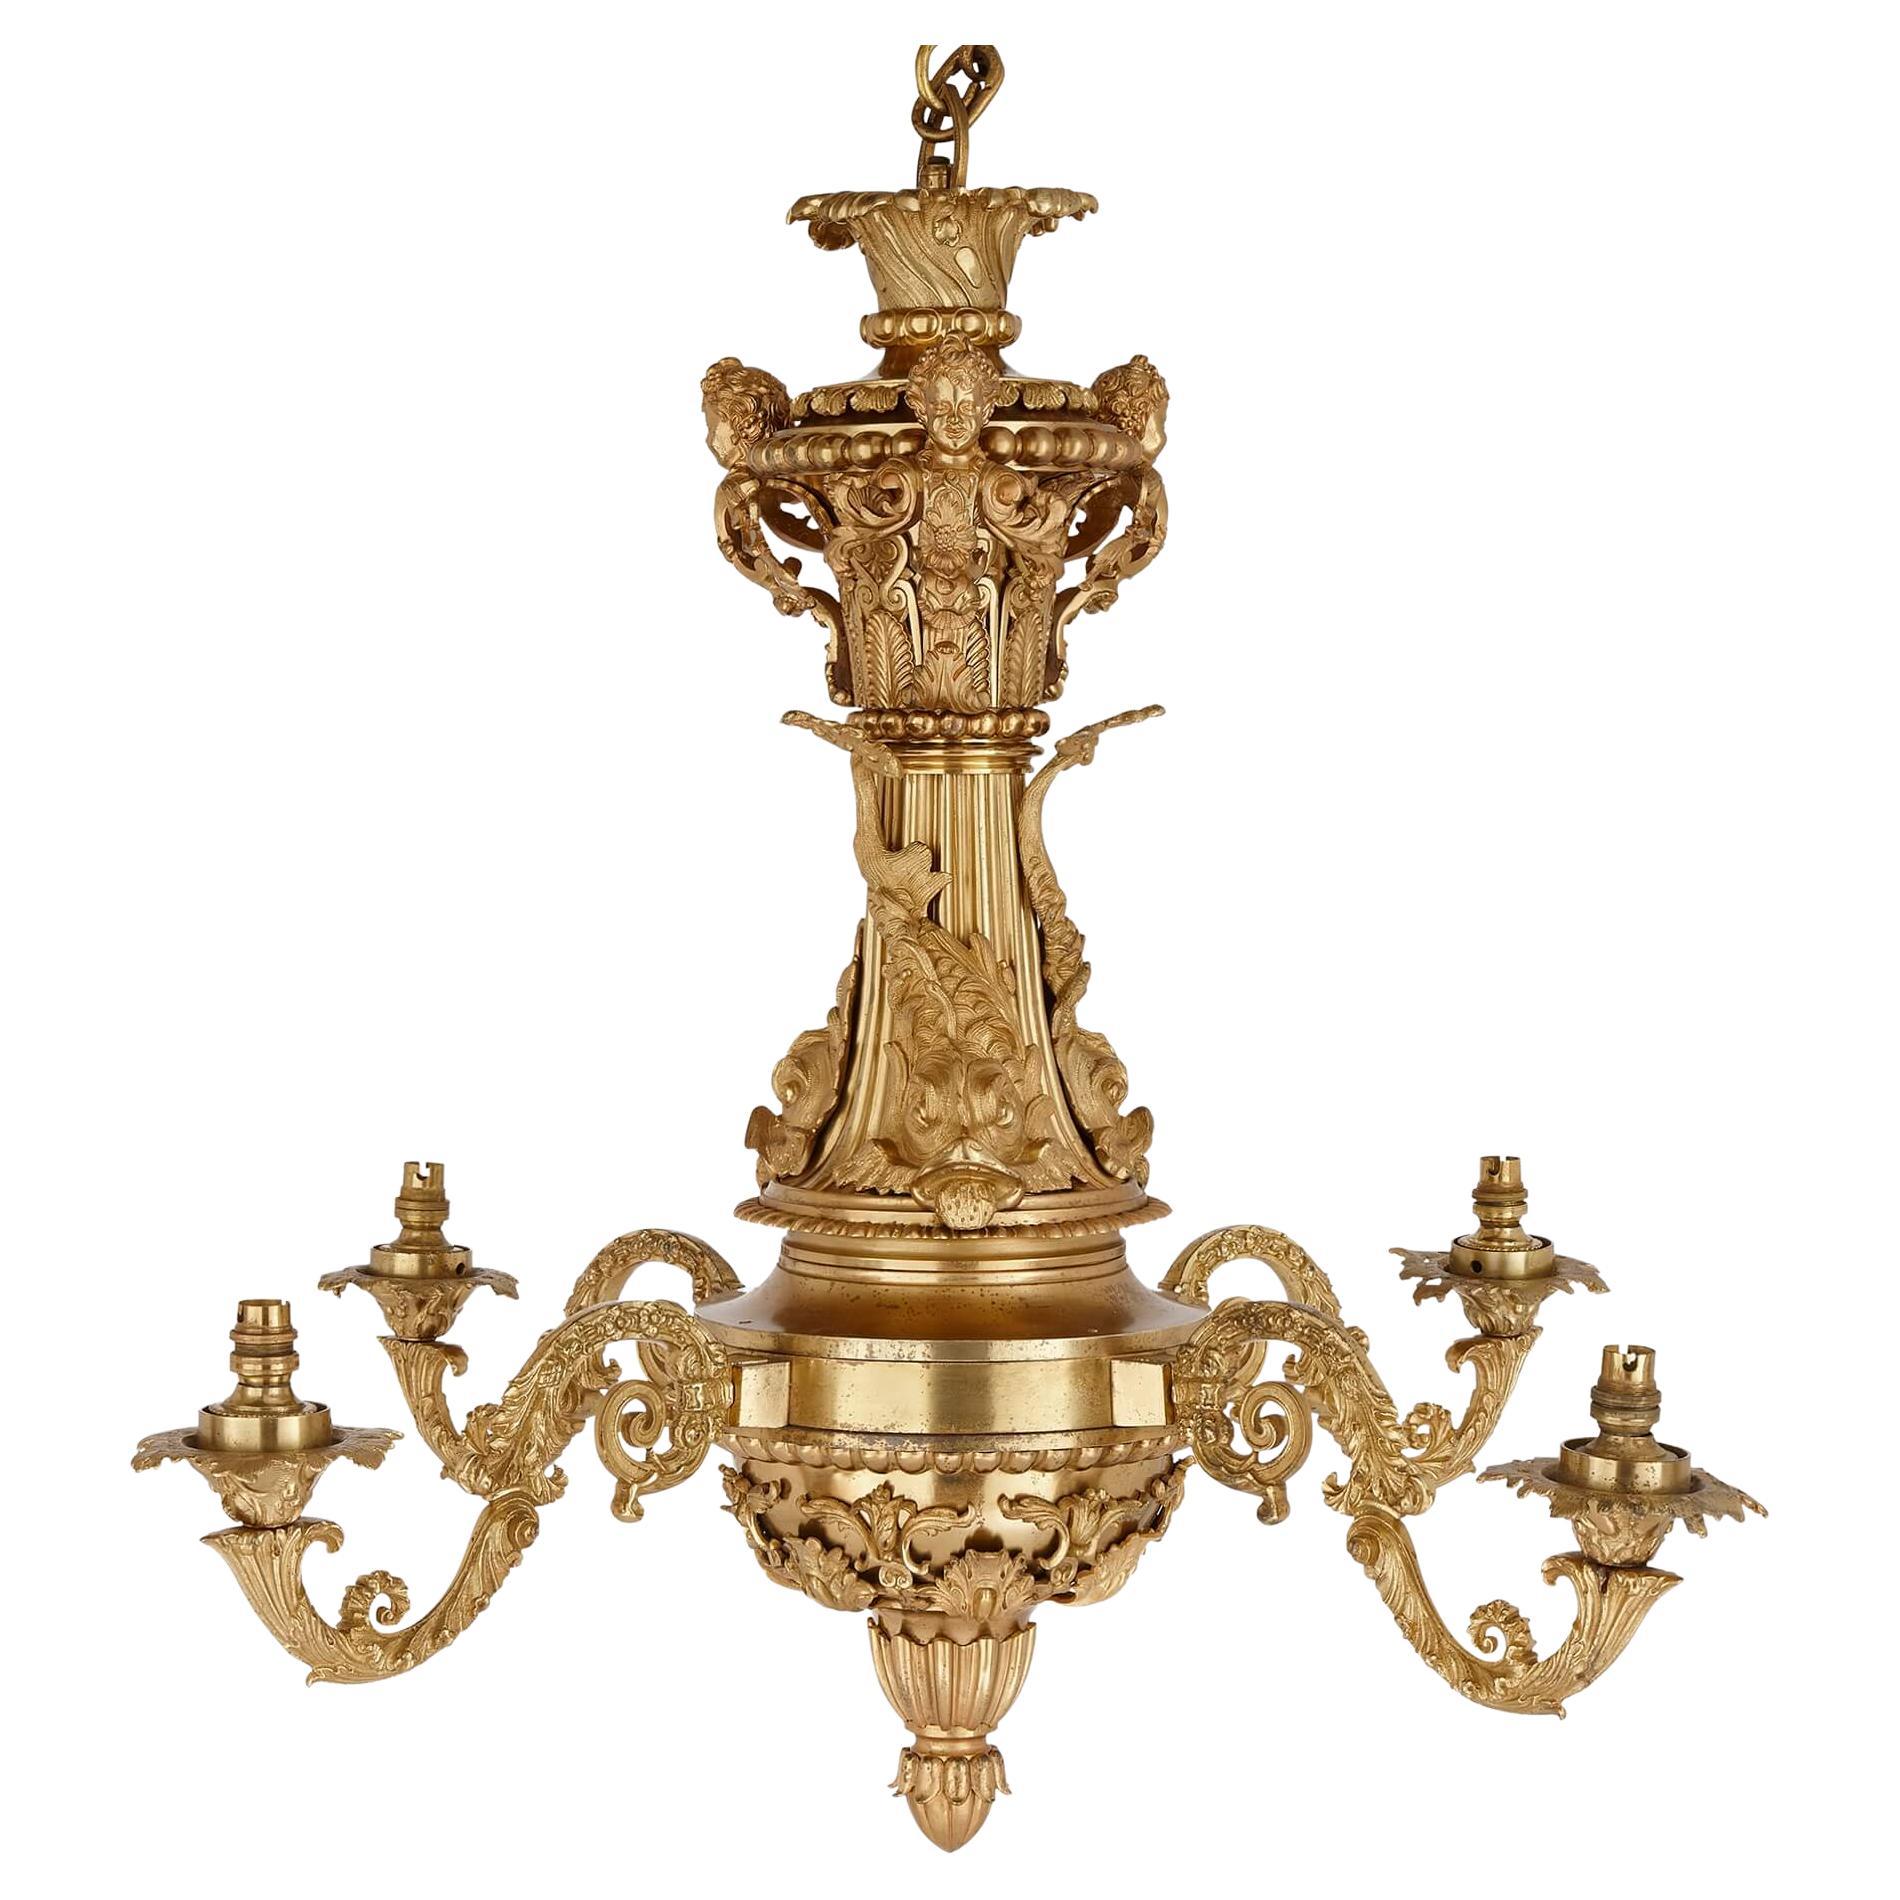 Très beau lustre ancien en bronze doré de style Régence